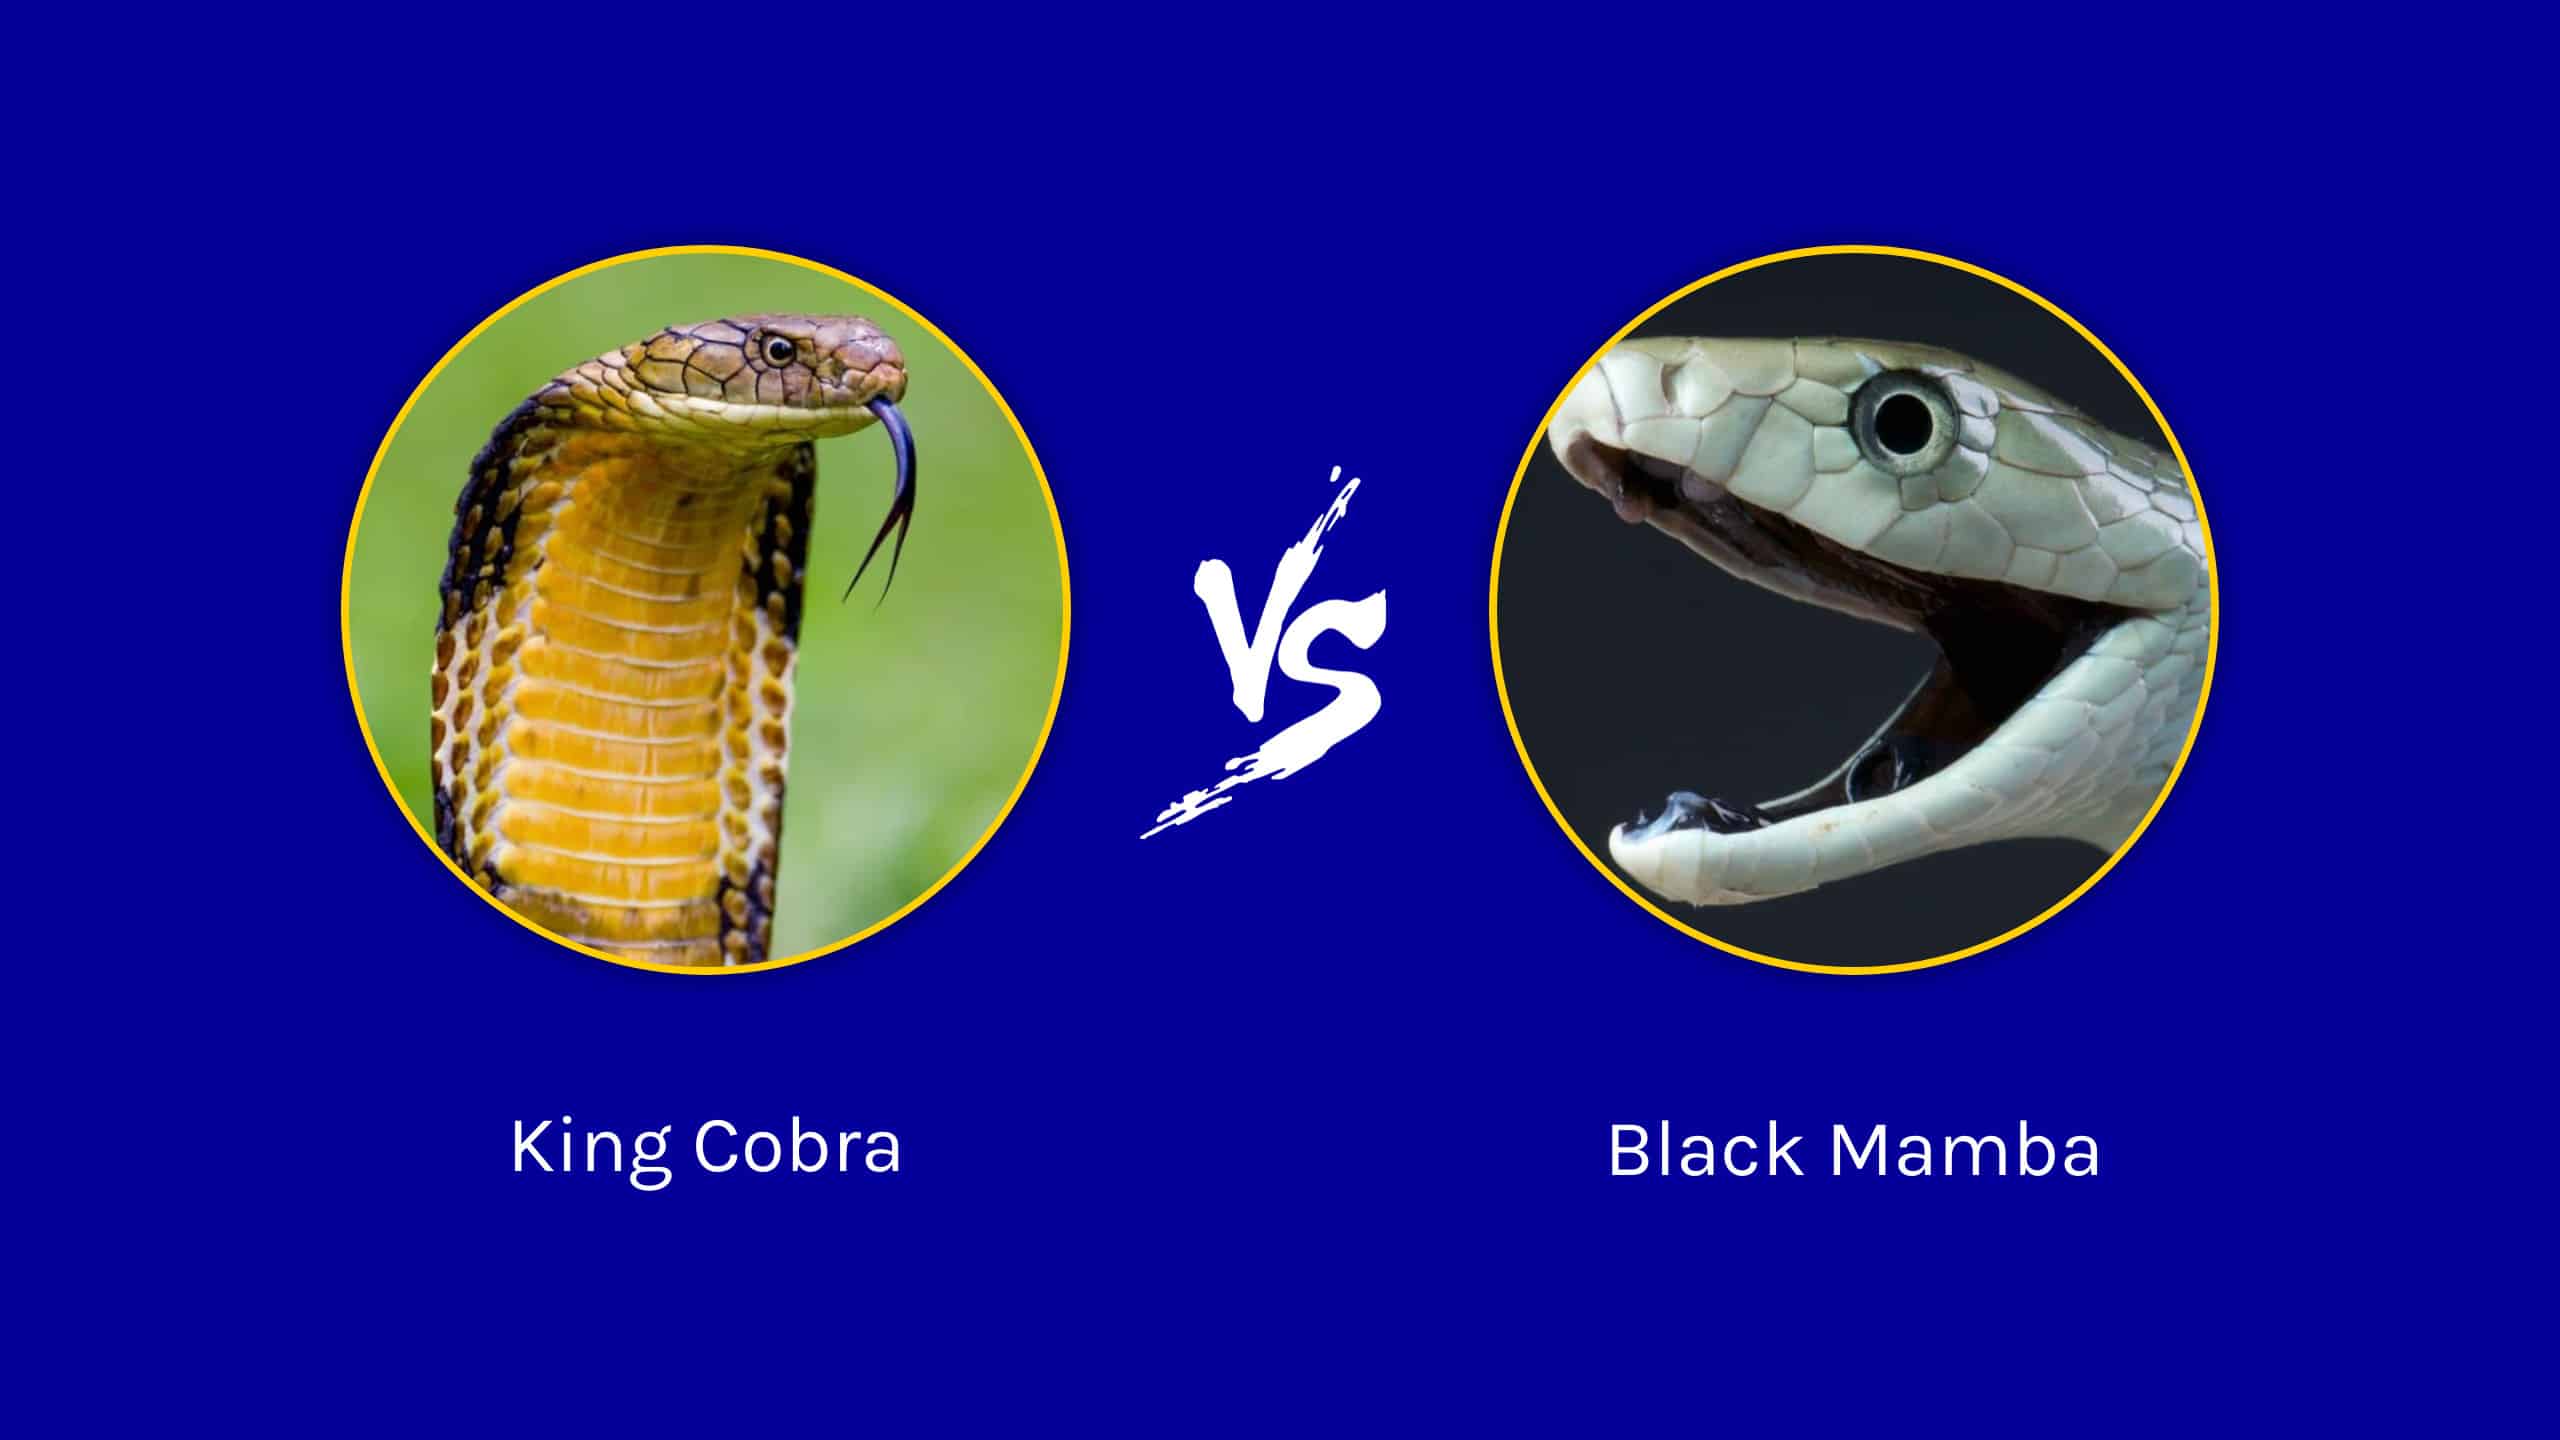 black king cobra snake